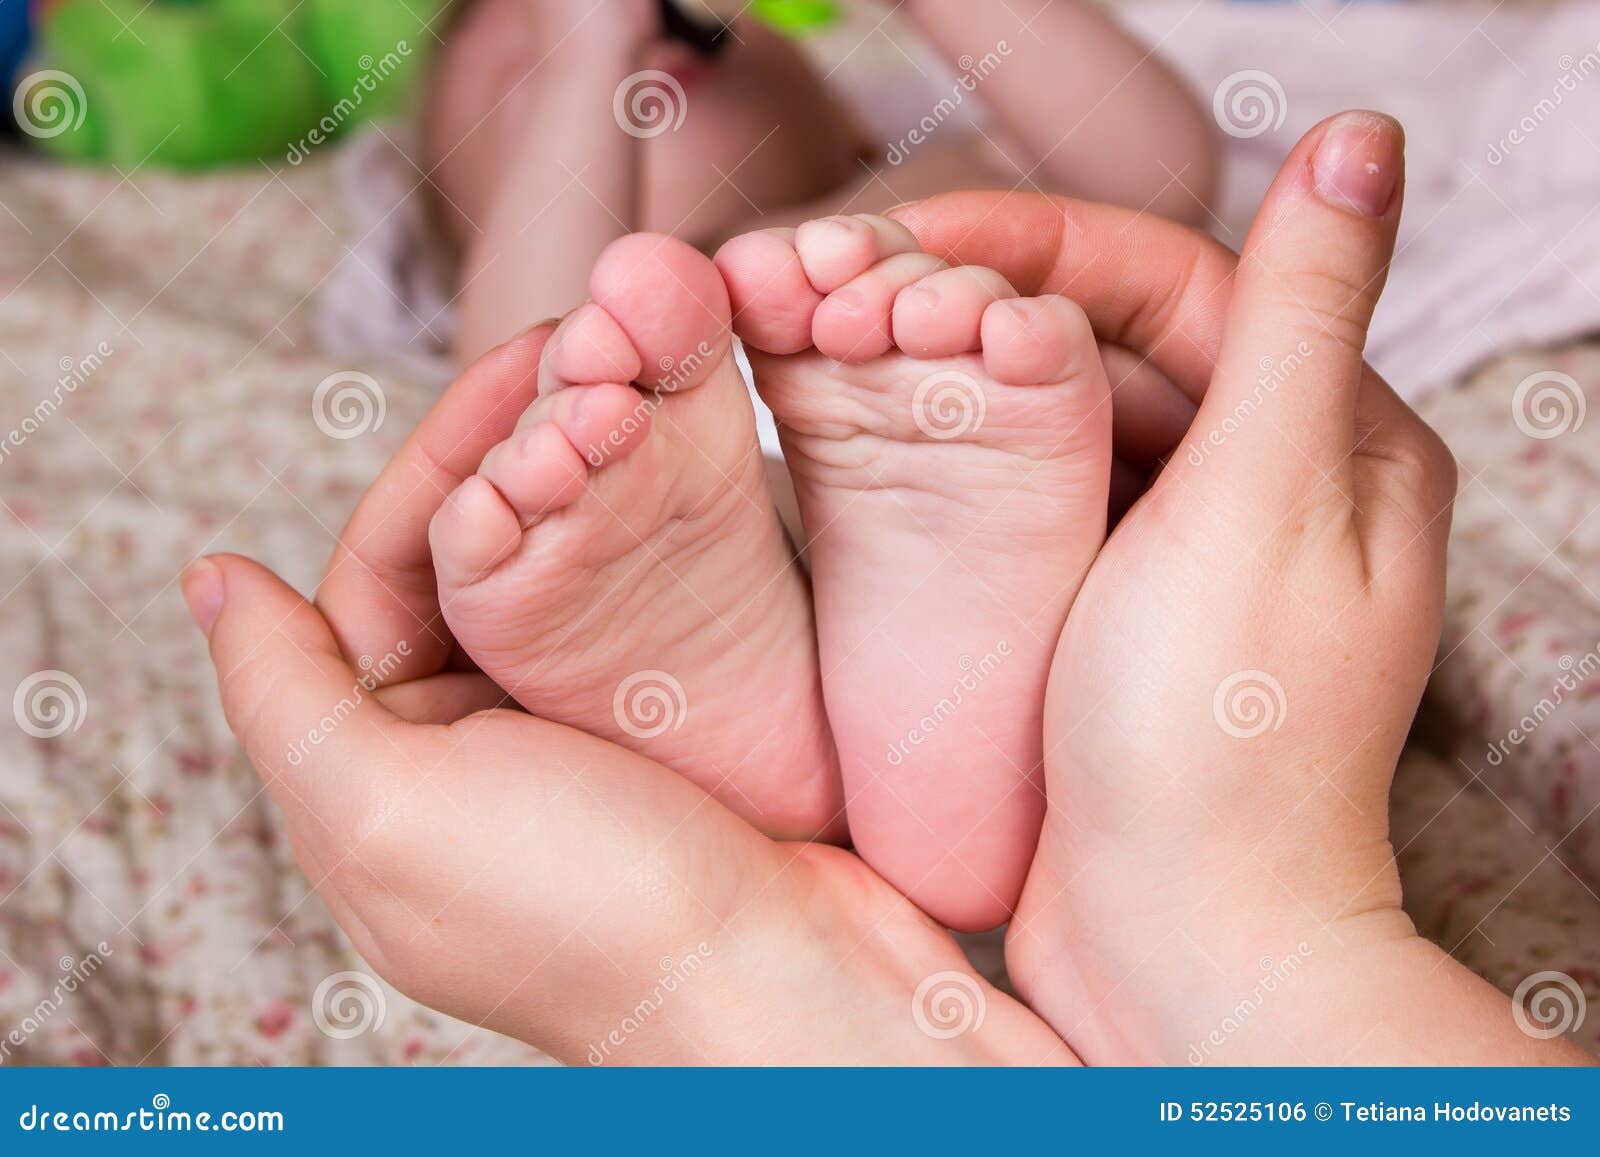 Включи мамочки ноги. Ноги мамы и ребёнка. Мама руки ноги. Стопы детей девочек. Нежные ножки мамы.